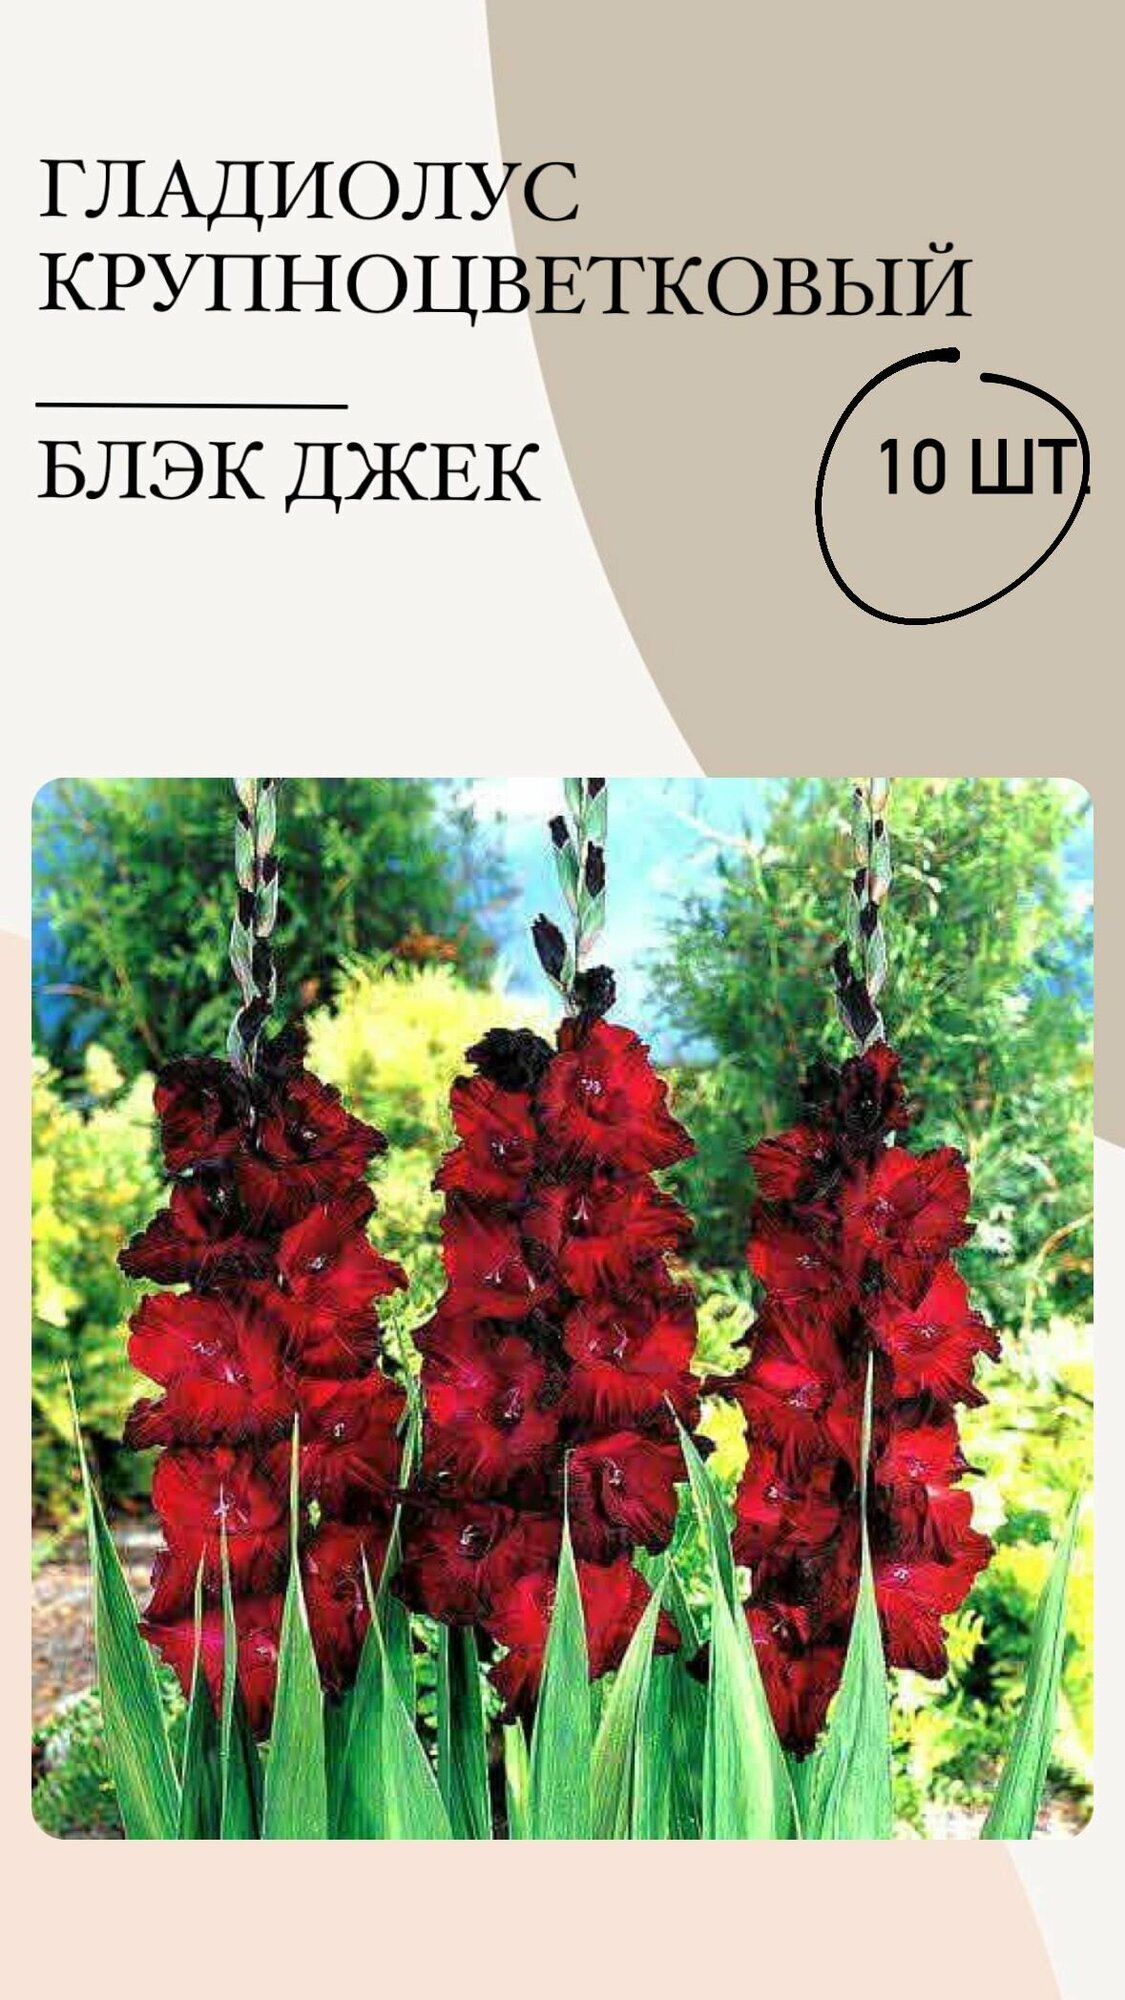 Гладиолус крупноцветковый, луковицы многолетних цветов